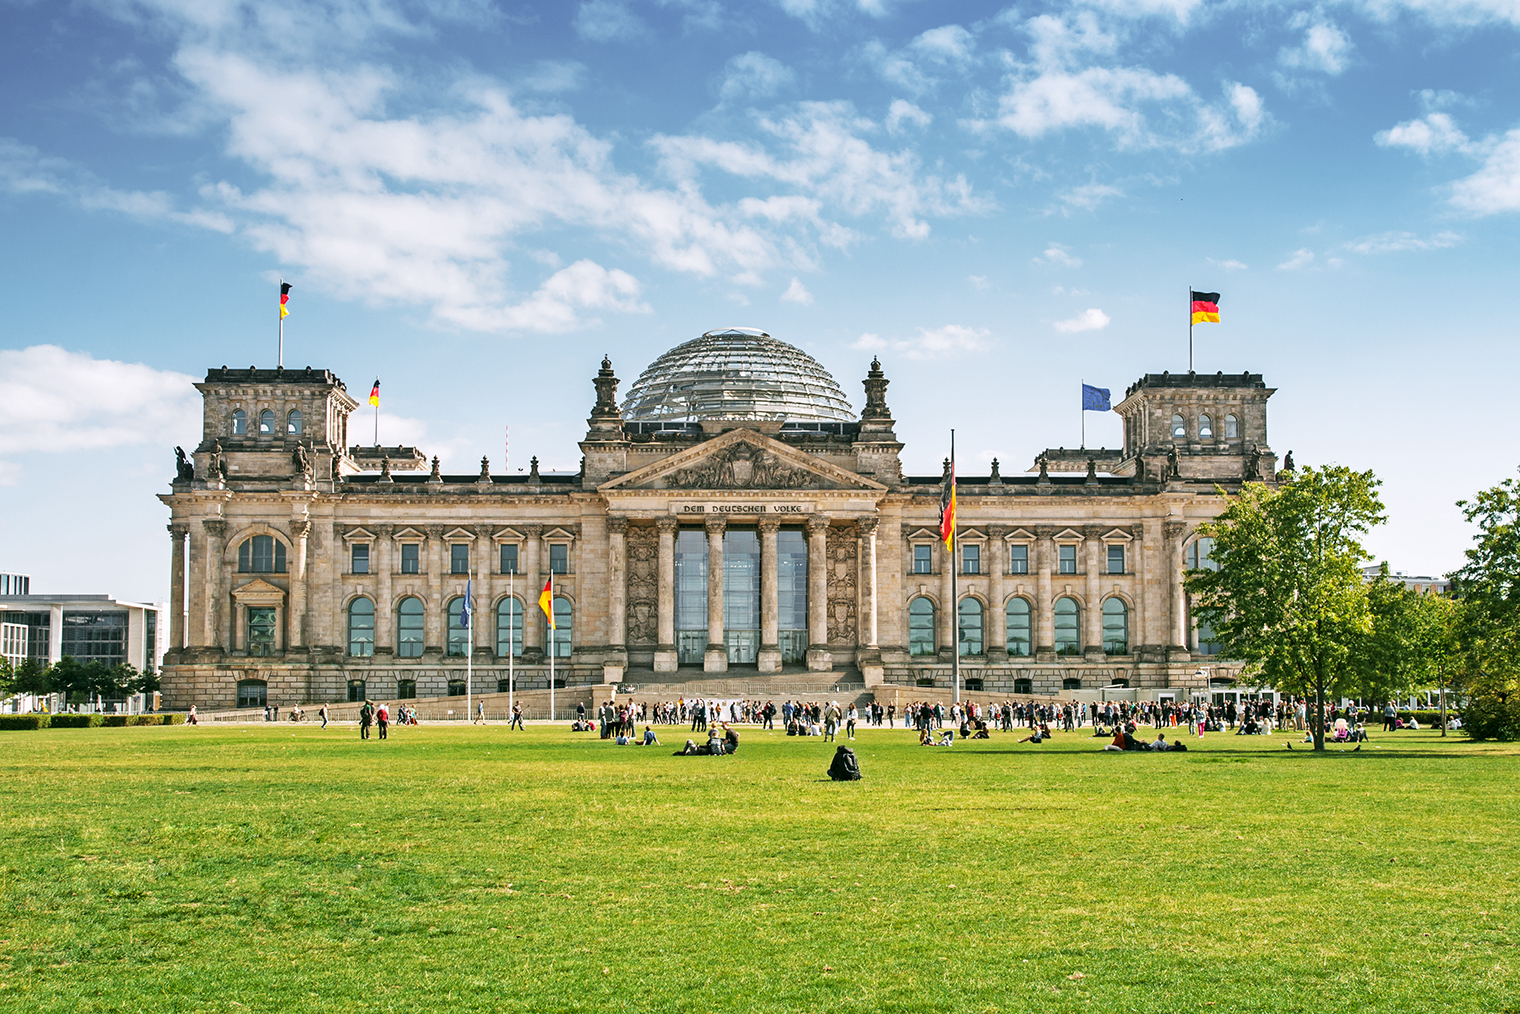 Здание Рейхстага возвели в конце 19 века в стиле неоренессанса. Фотография: Pani Garmyder / Shutterstock